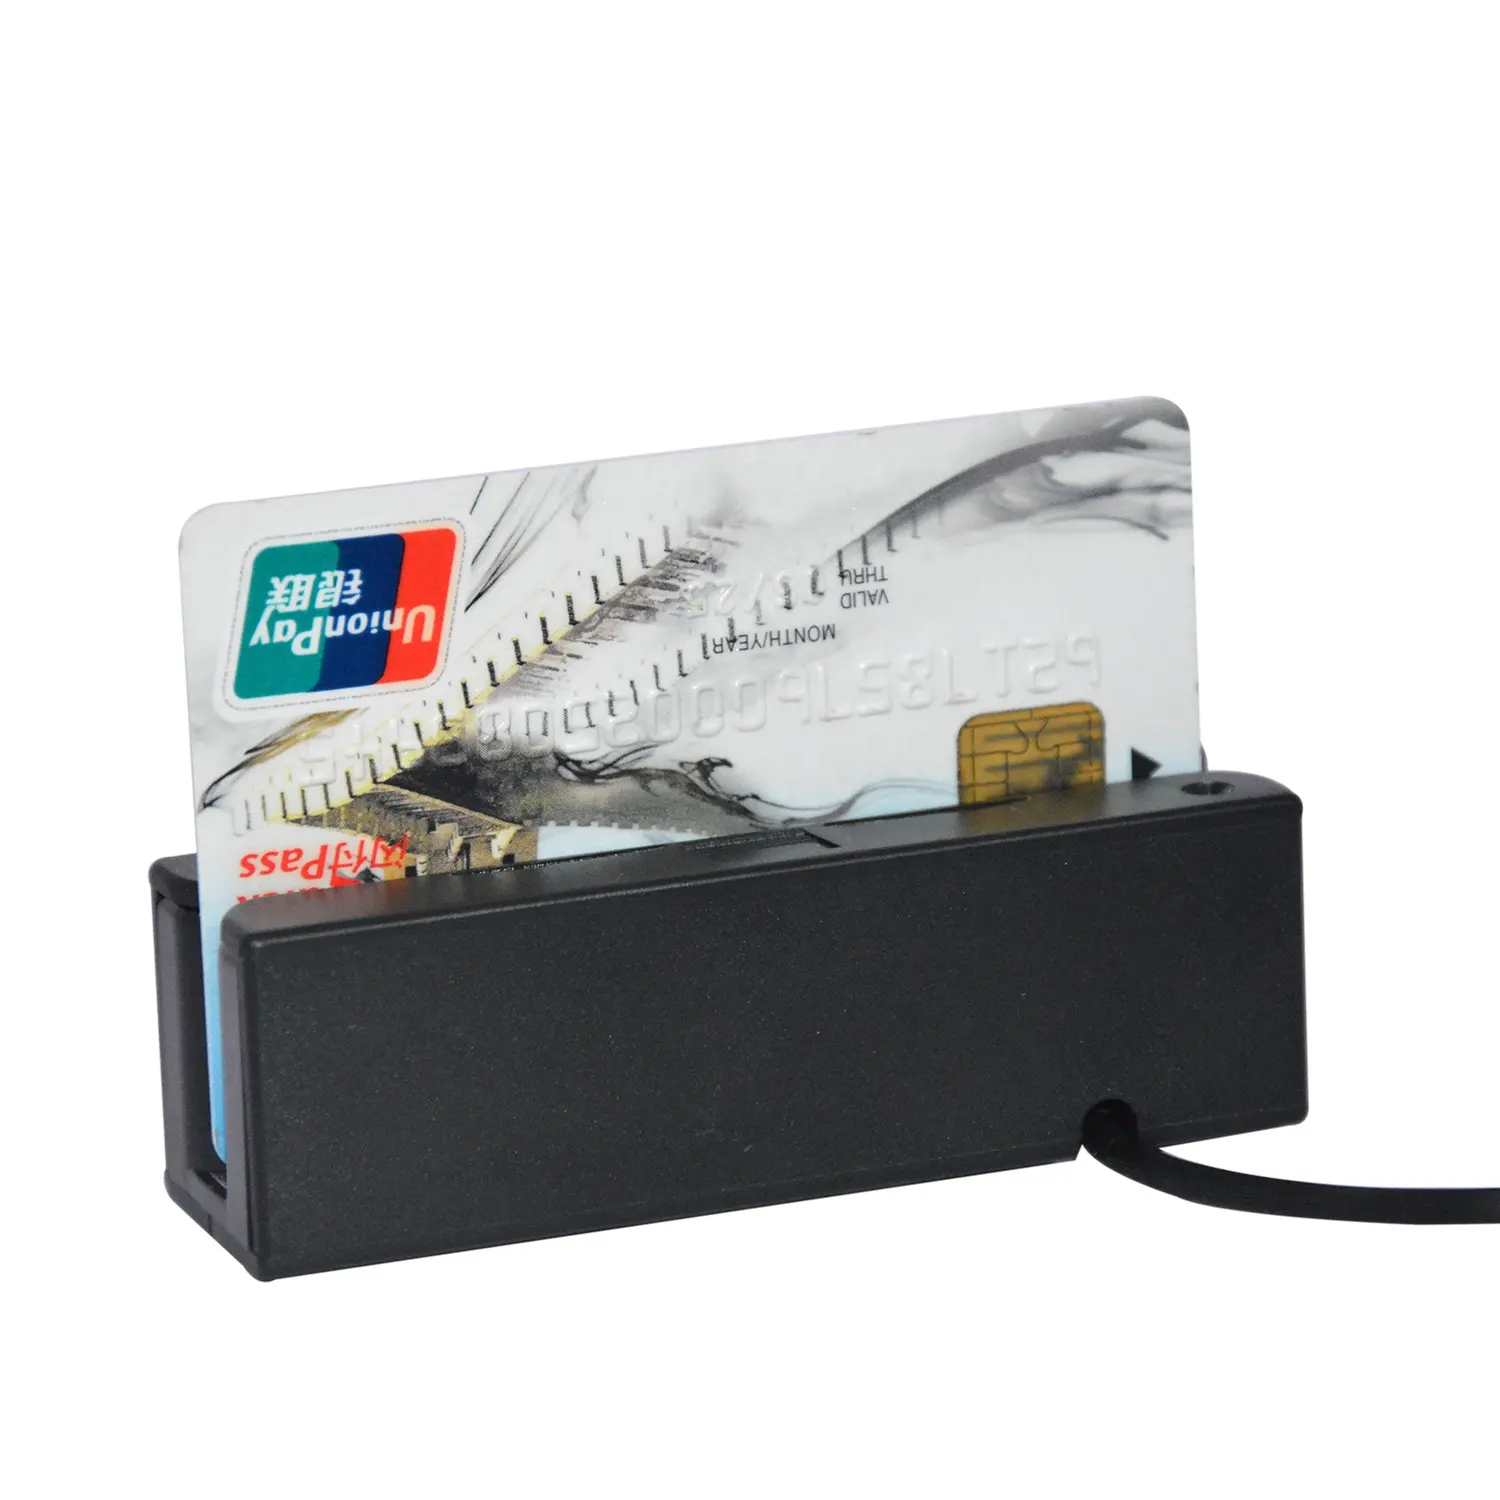 저렴한 3 트랙 USB 자기 및 Magstripe 카드 리더 작가 무료 SDK HCC750U-06